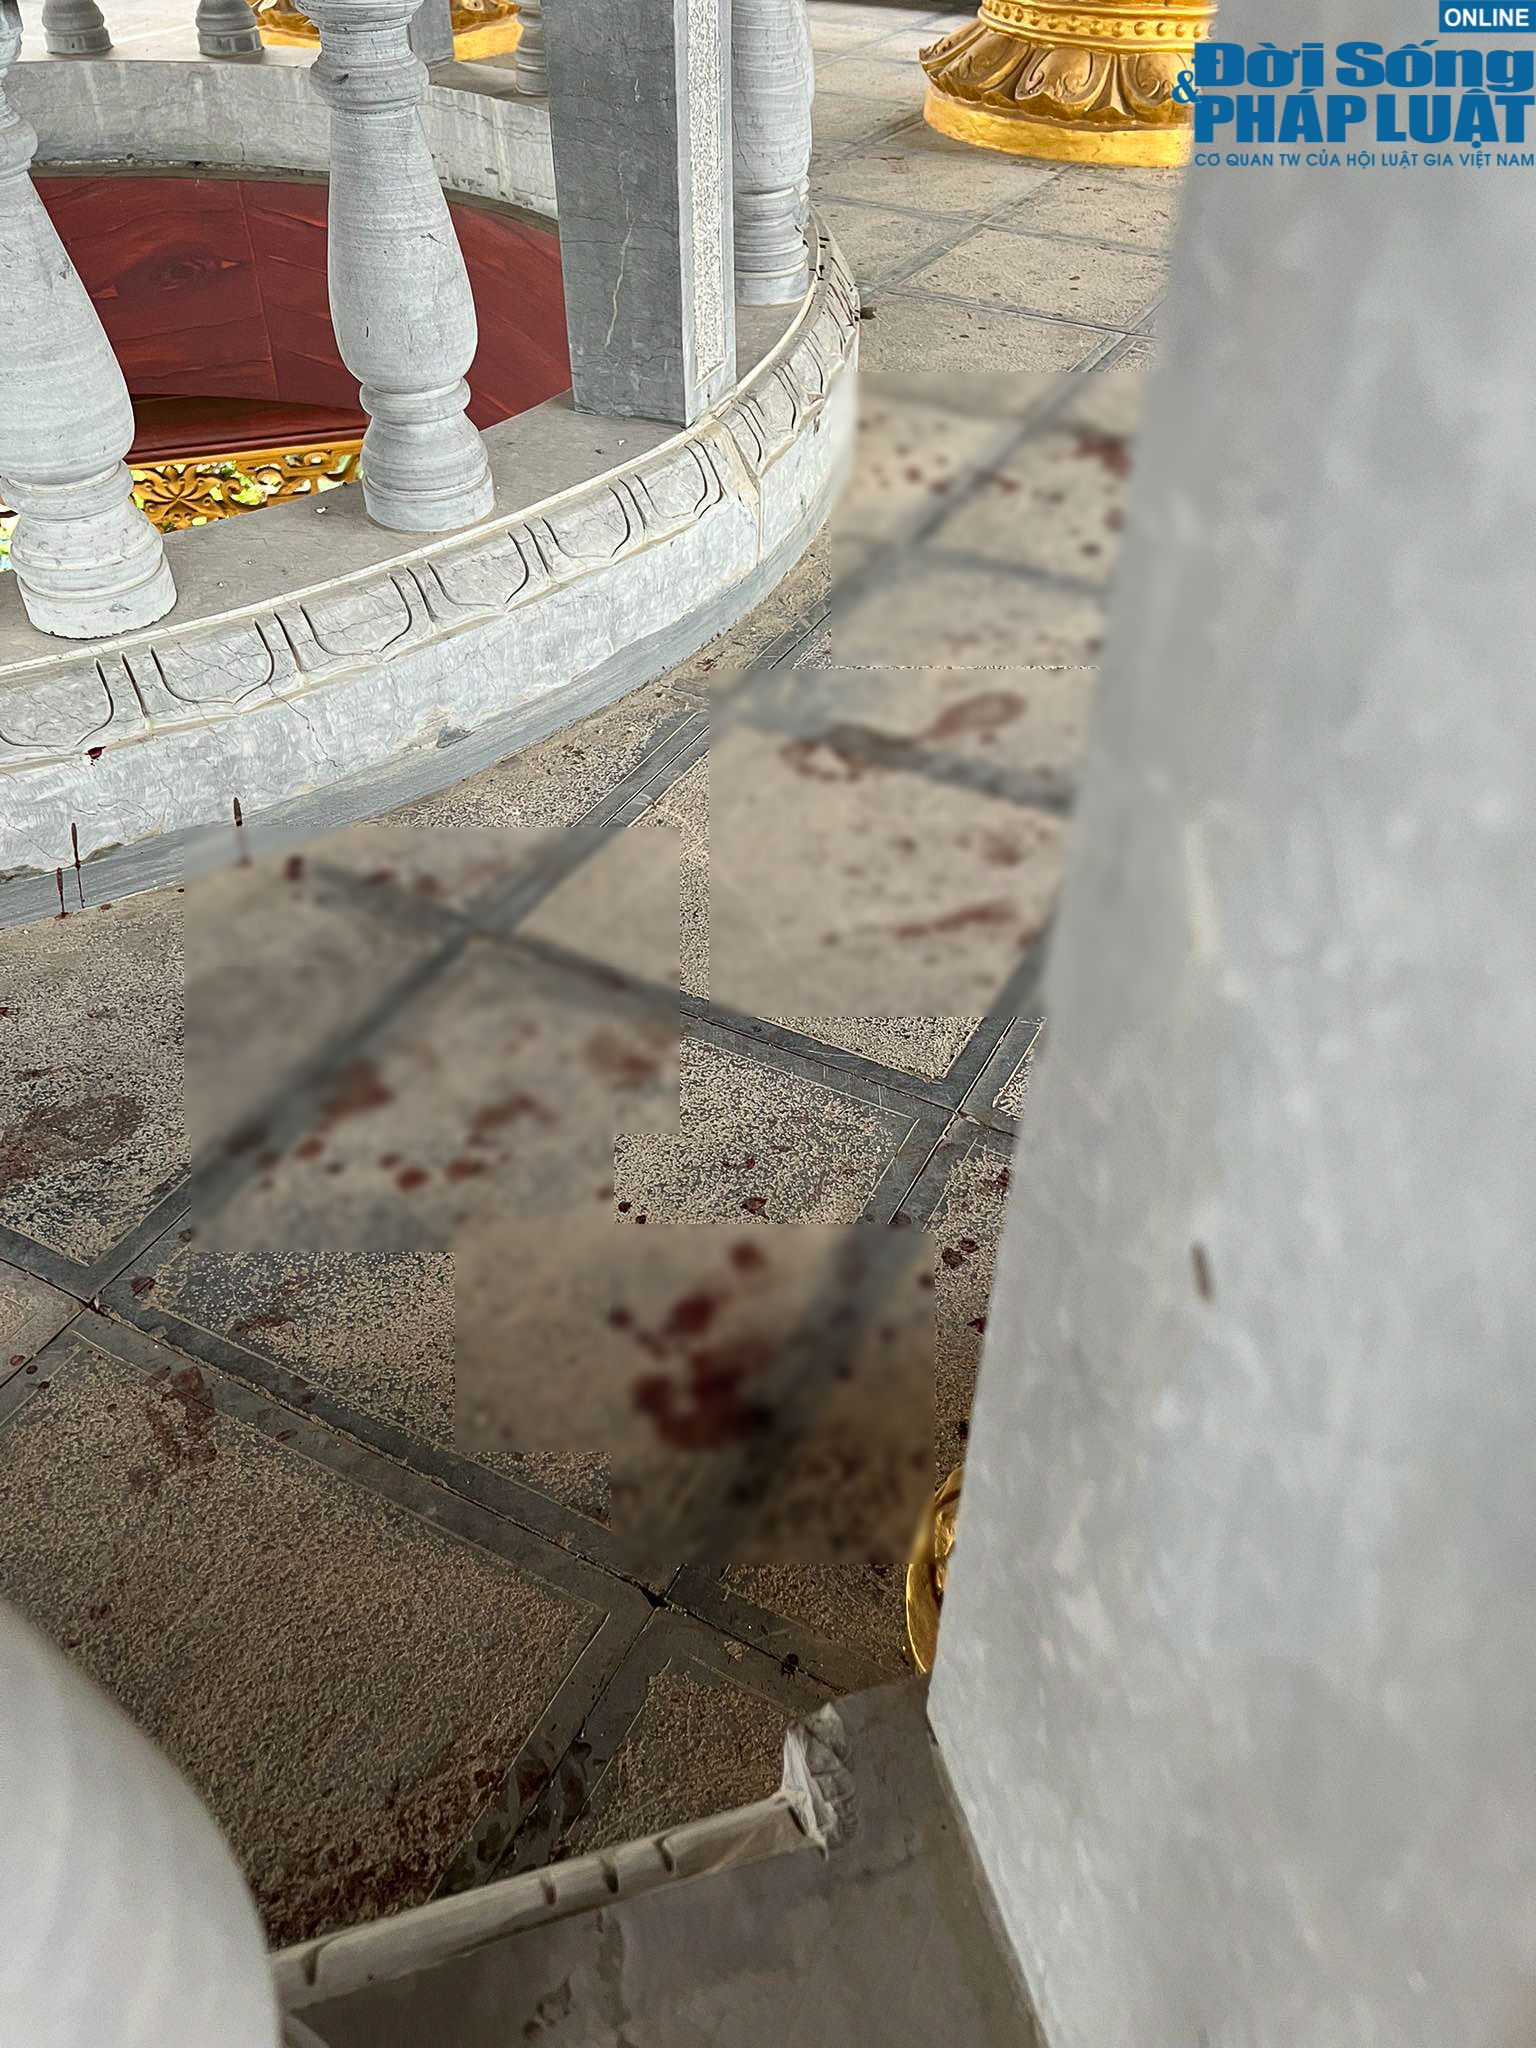 An ninh - Hình sự - Vụ 2 nữ sinh bị sát hại ở Bắc Ninh: Rùng mình dòng chữ “yêu em' tại hiện trường (Hình 2).